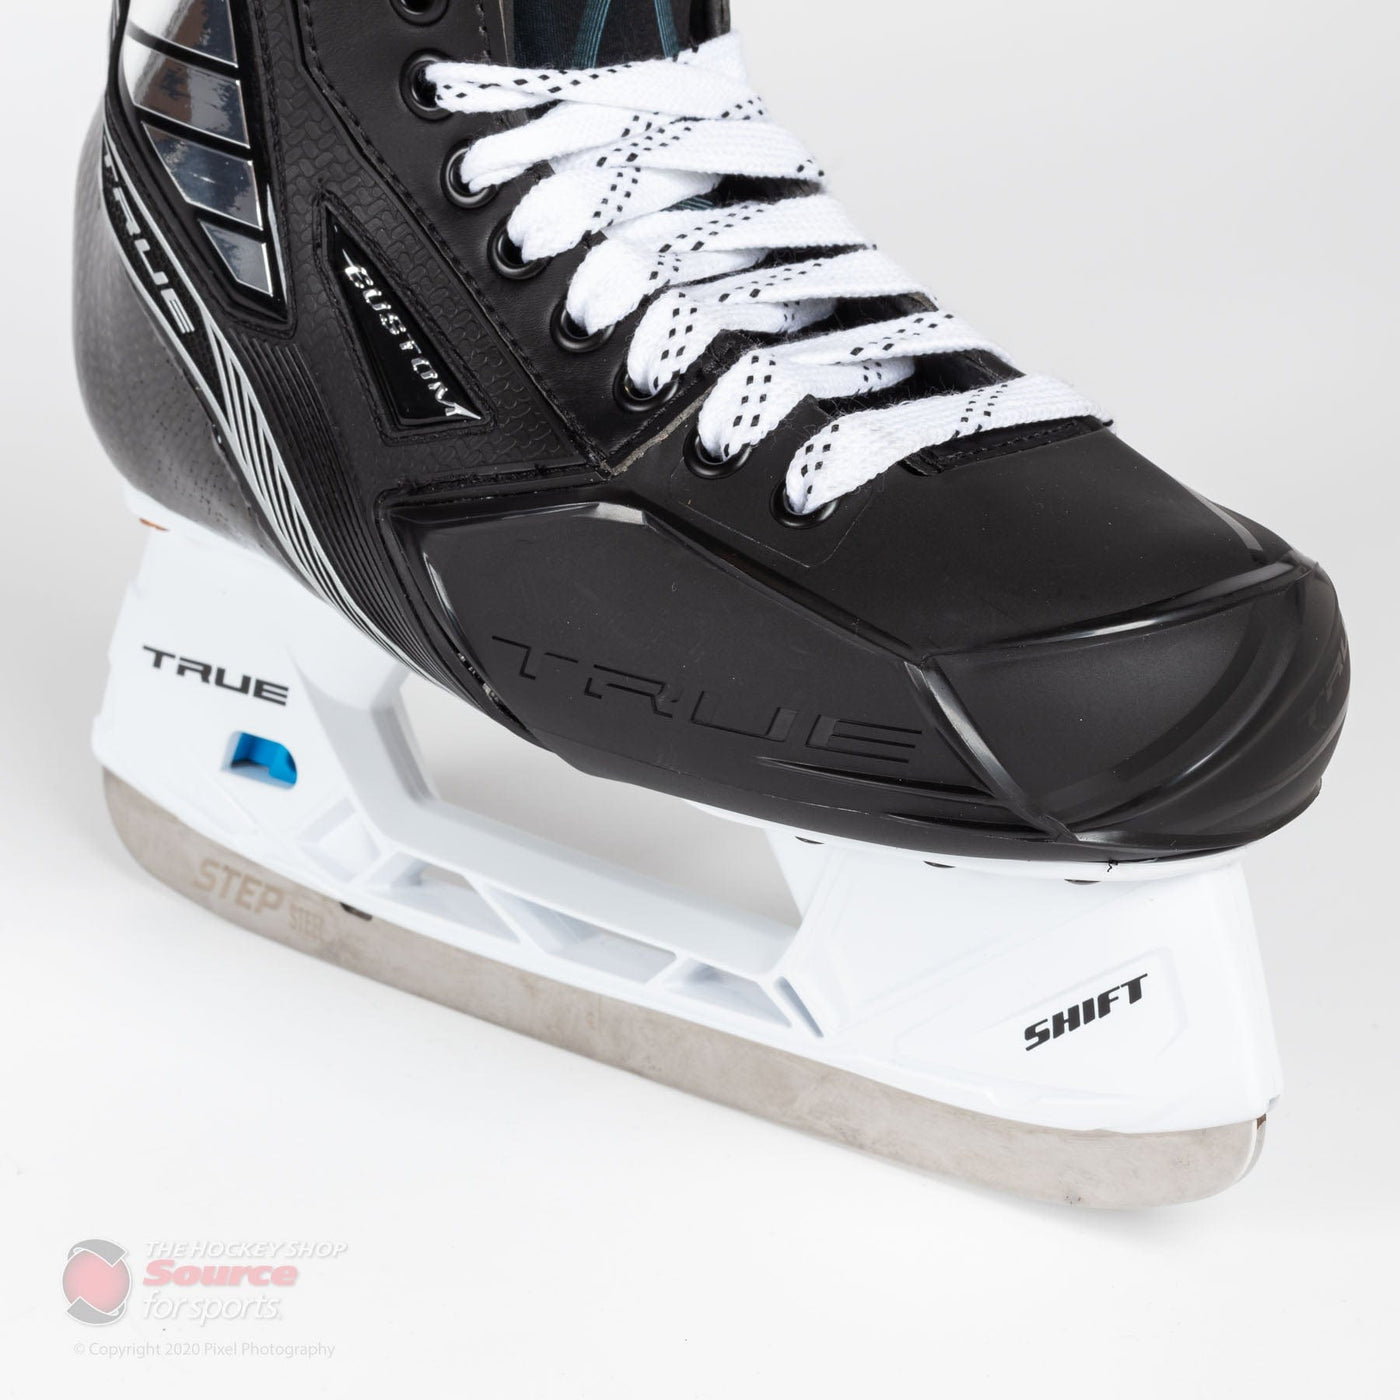 TRUE TF Pro Custom Senior Hockey Skates